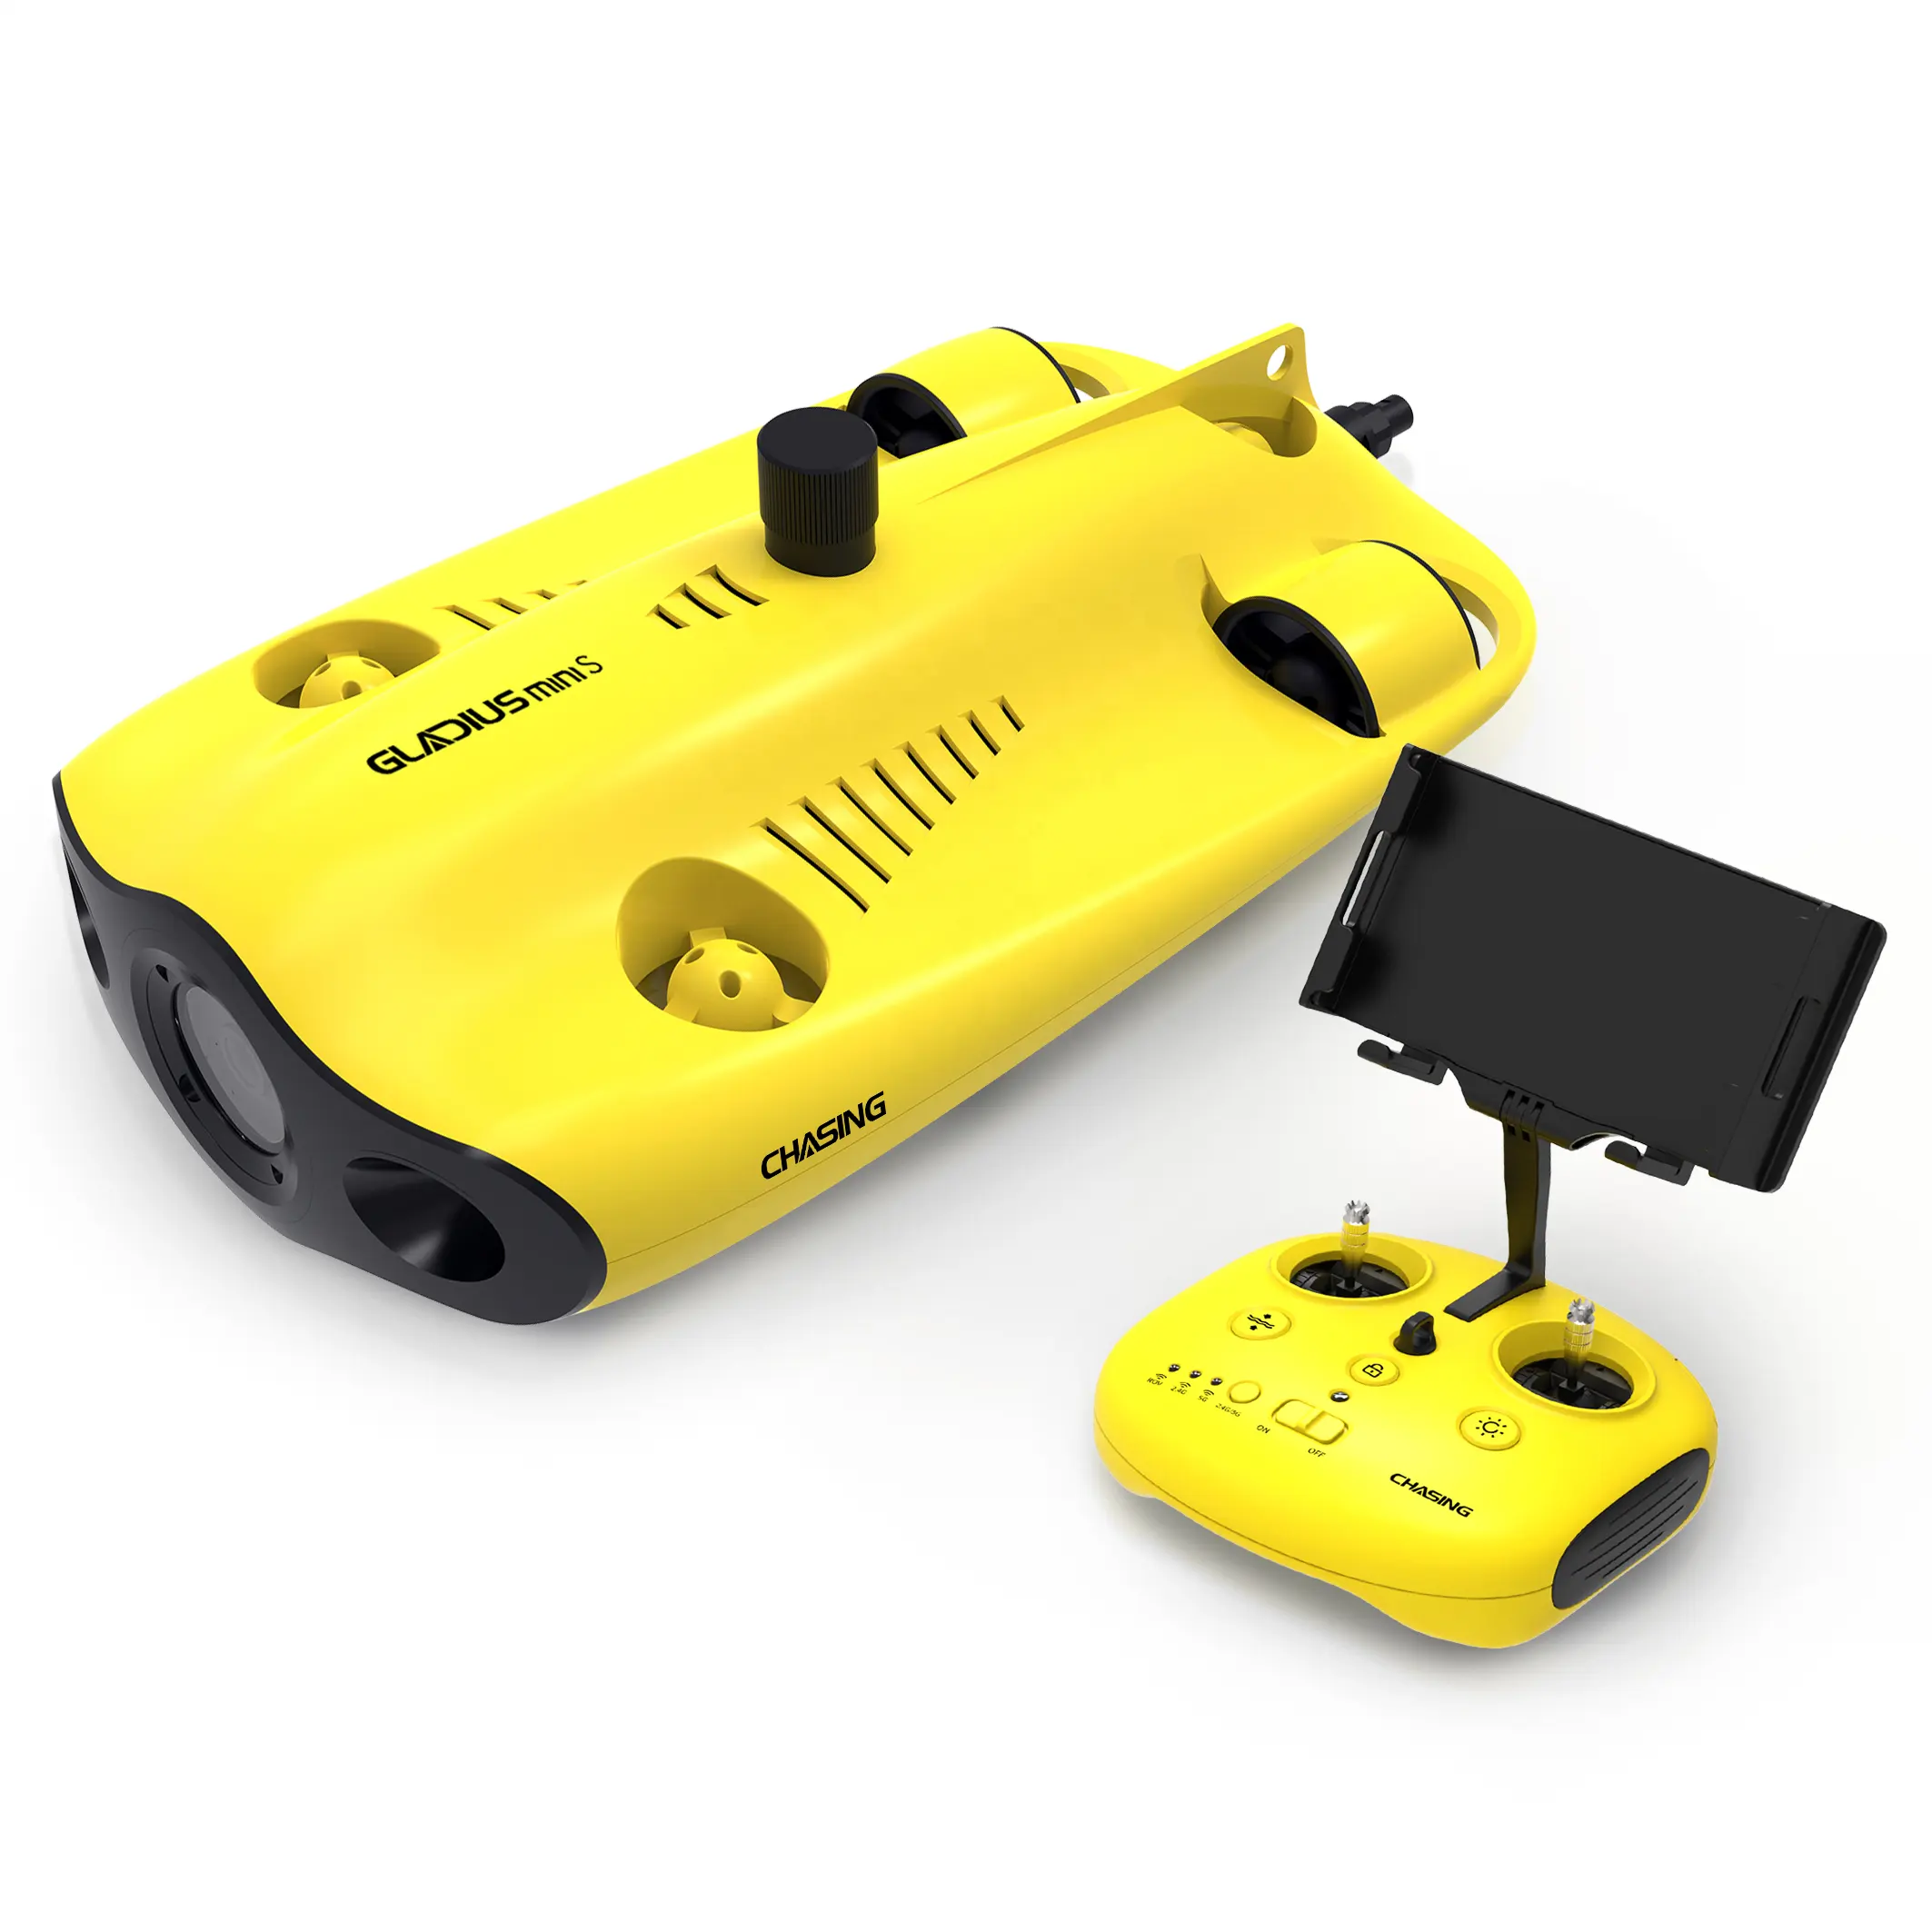 Mainan Alat Selam untuk Anak-anak Gladius MINI S, Drone Remote Control Bawah Air dan Aplikasi